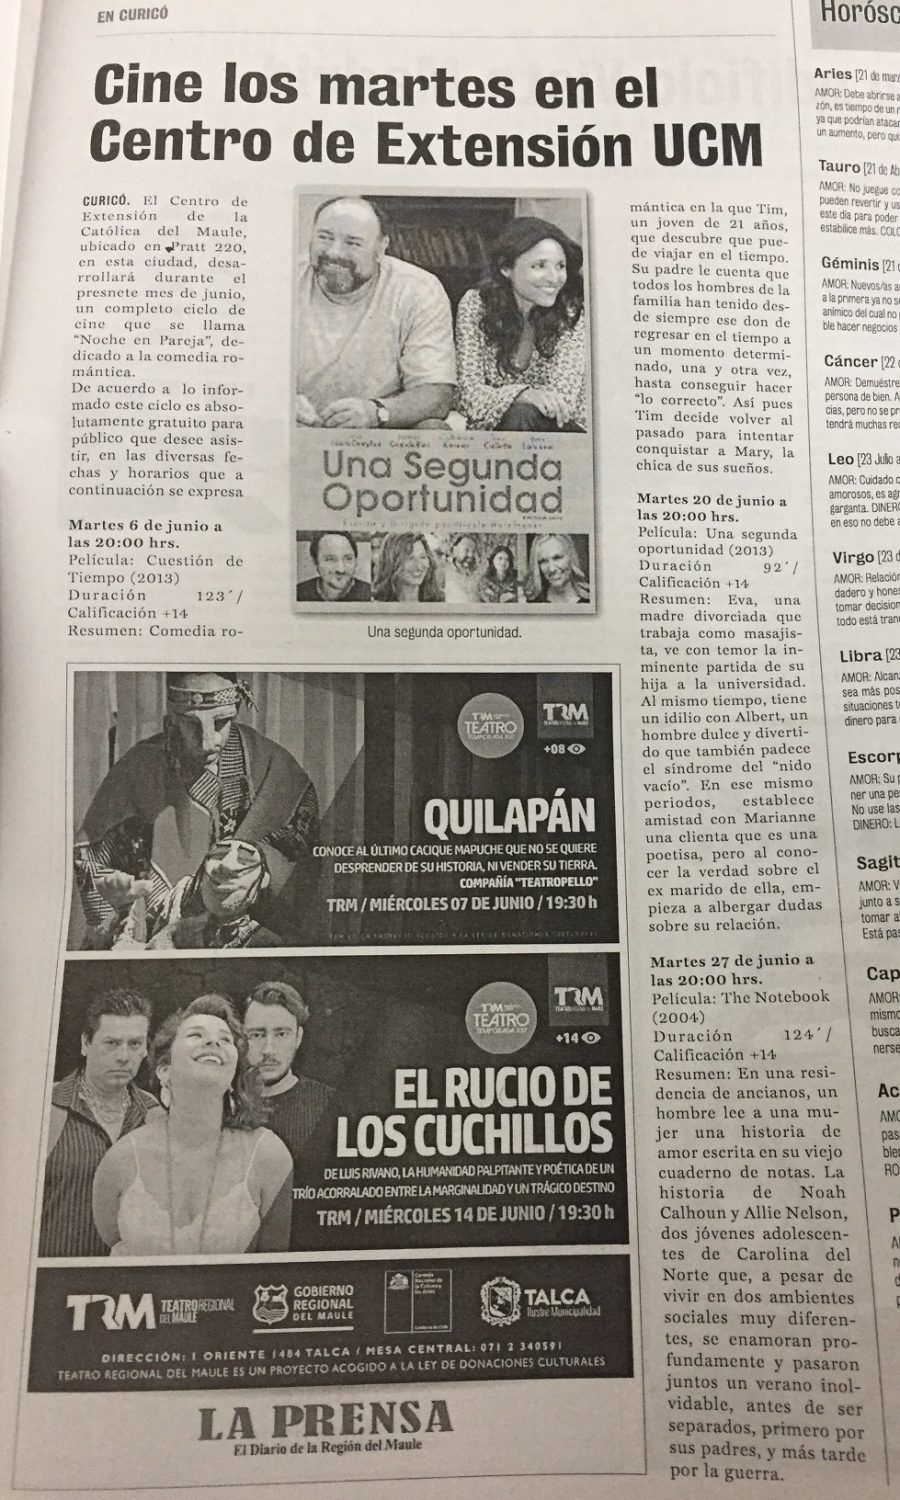 06 de junio en Diario La Prensa: “Cine los martes en el Centro de Extensión UCM”